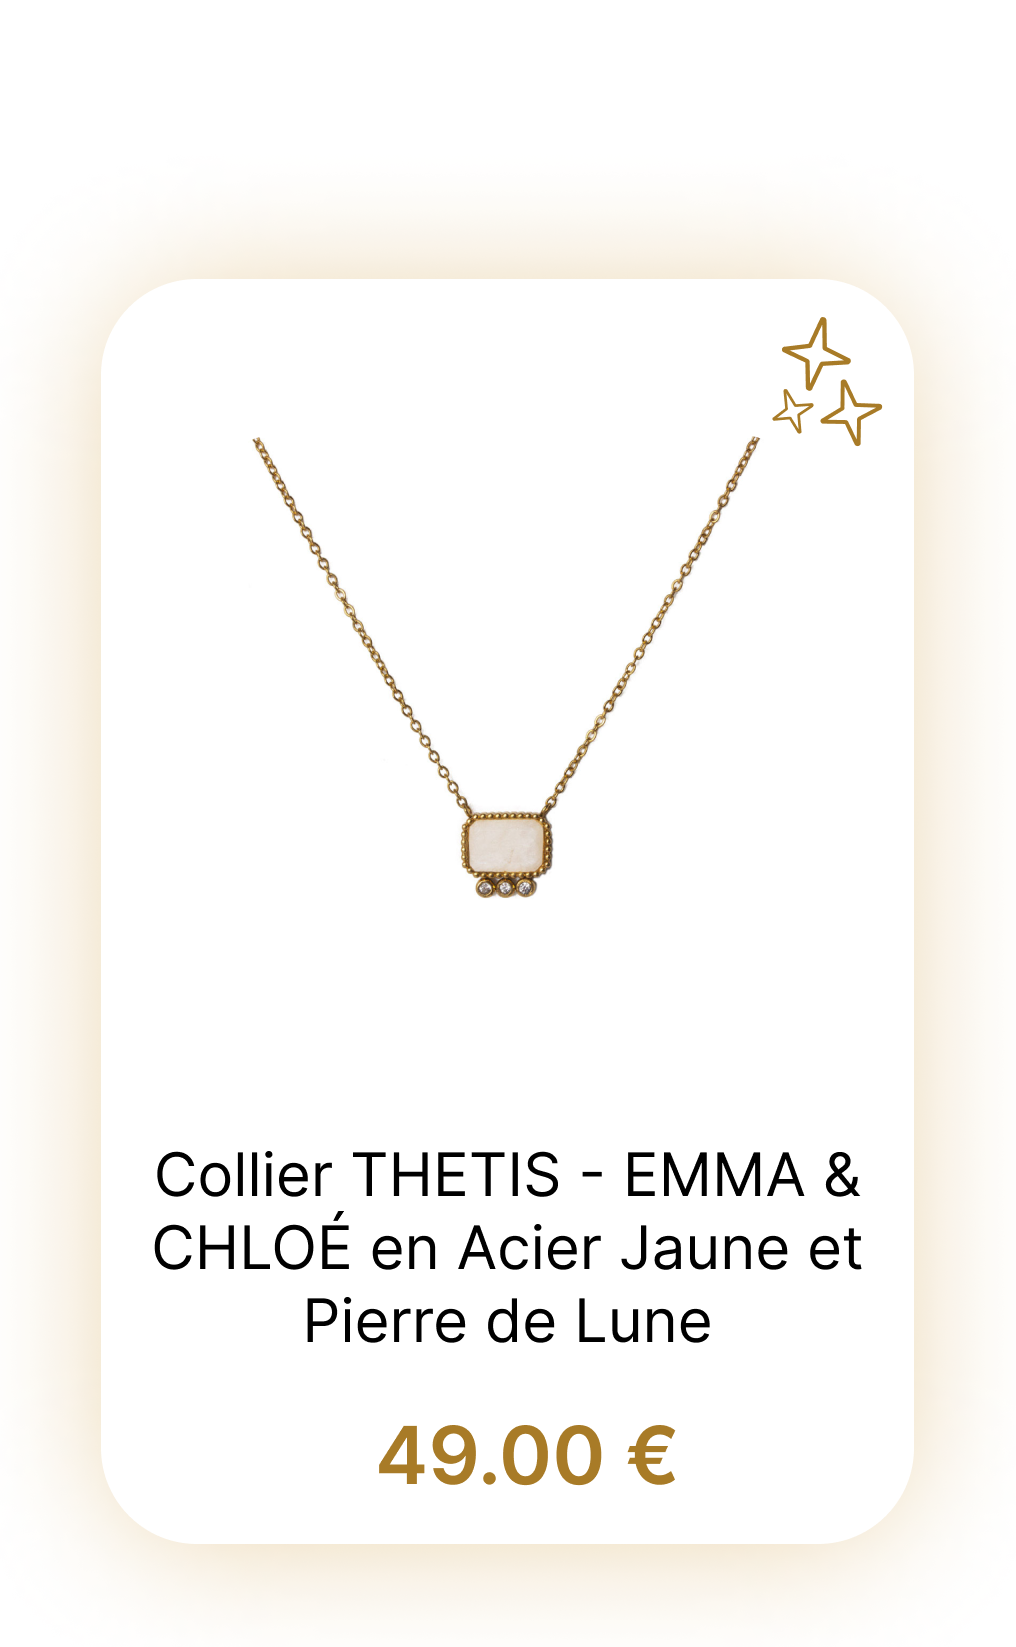 Collier THETIS - EMMA & CHLOÉ en Acier Jaune et Pierre de Lune